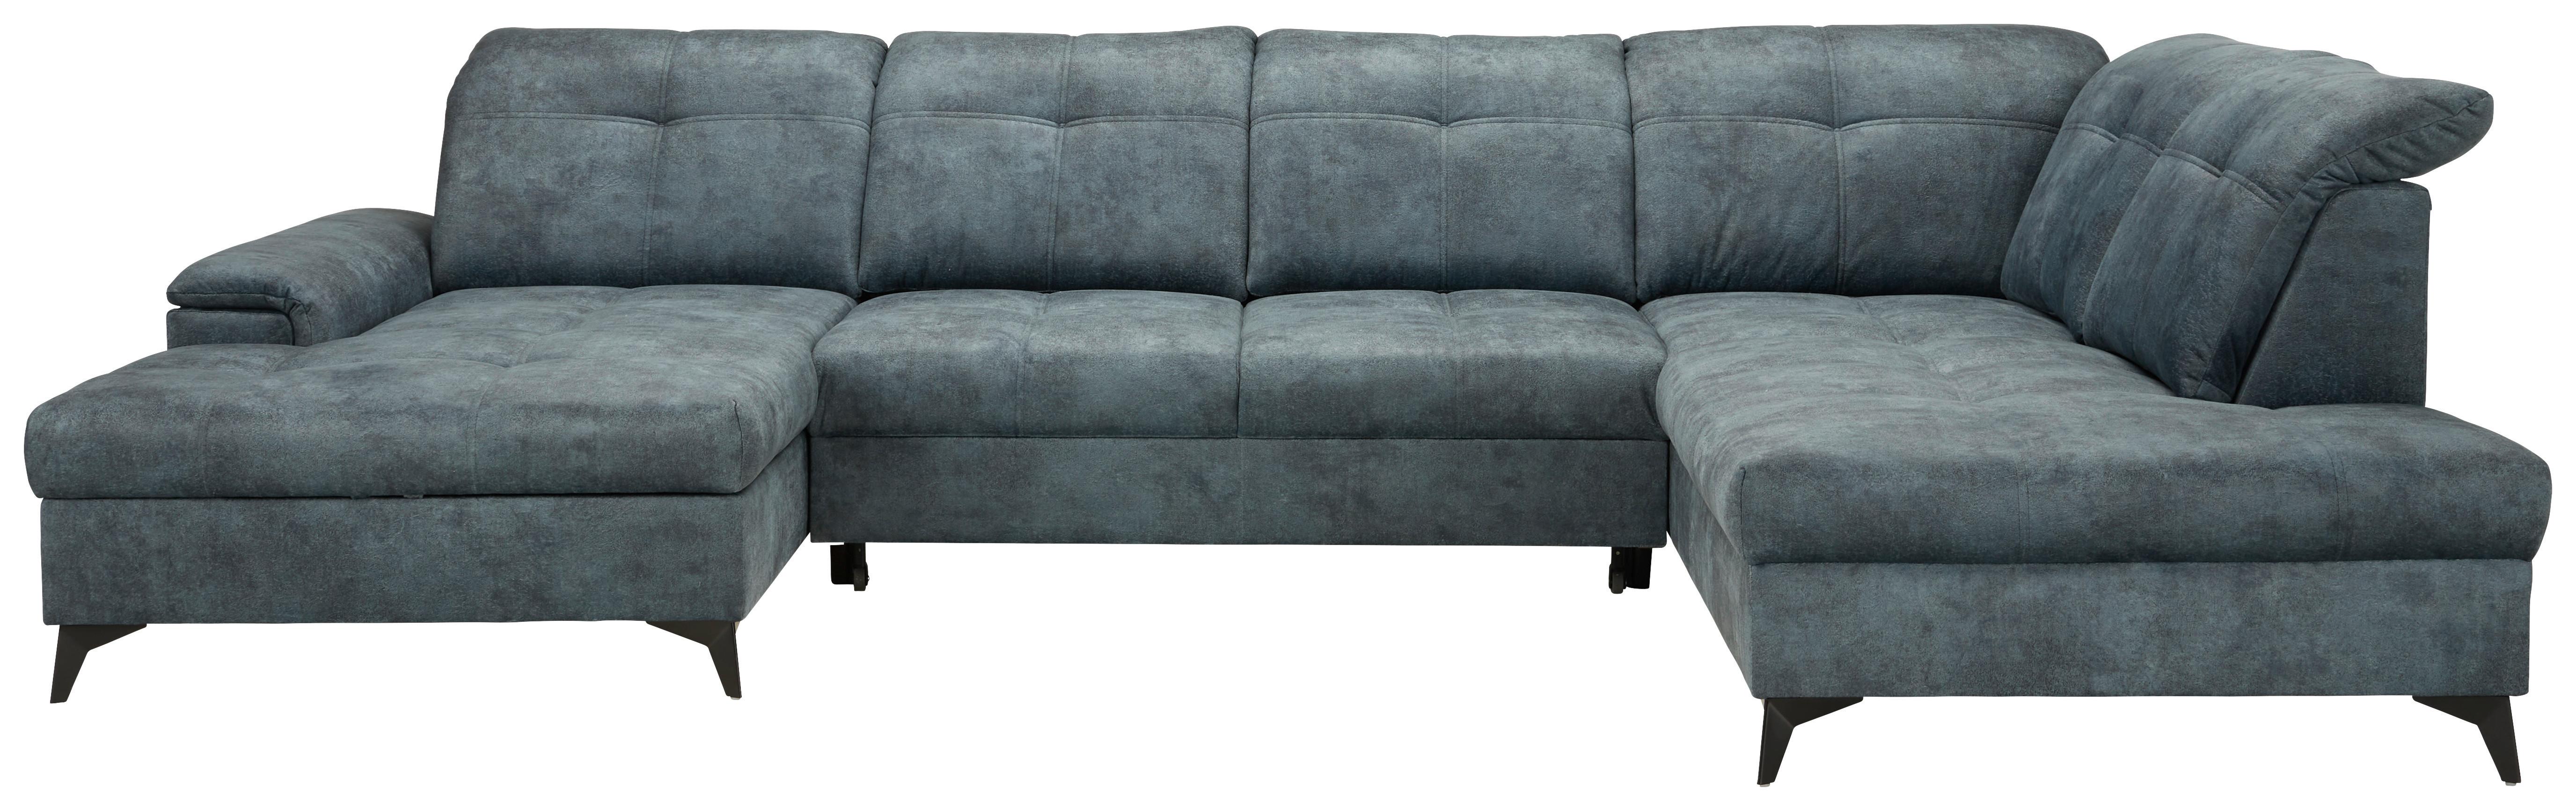 Sedežna Garnitura Sierra, Temno Modra, Ležišče, Predal - črna/modrosiva, Moderno, kovina/tekstil (181/364/230cm) - Modern Living